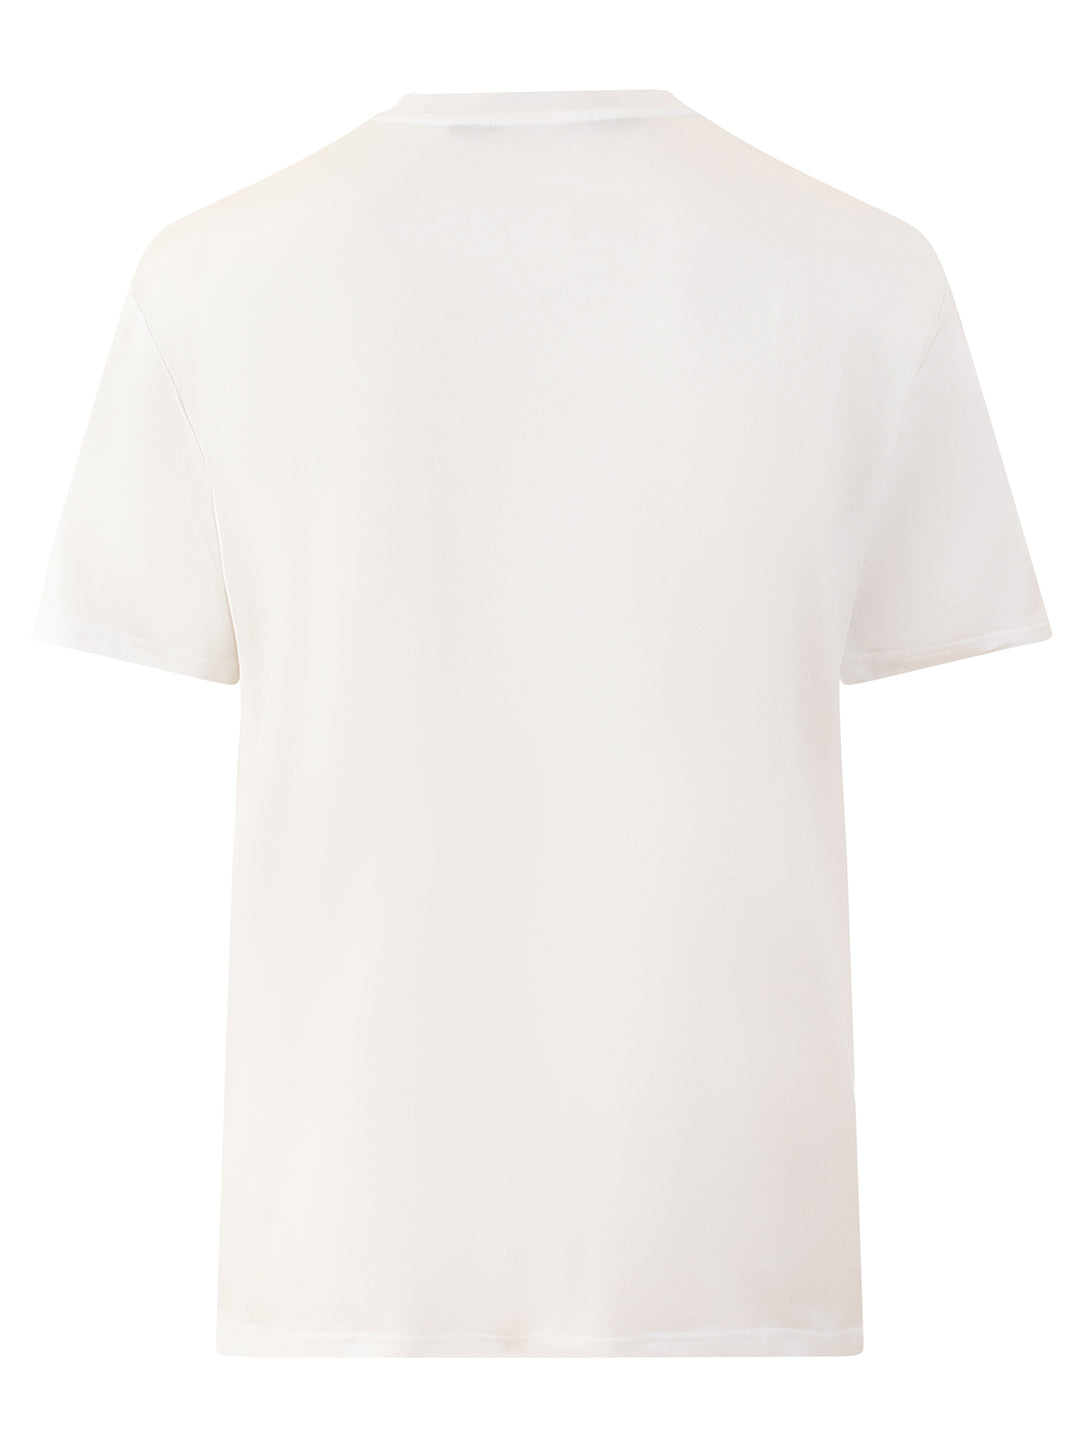 Just Cavalli Men White Printed Round Neck TShirt